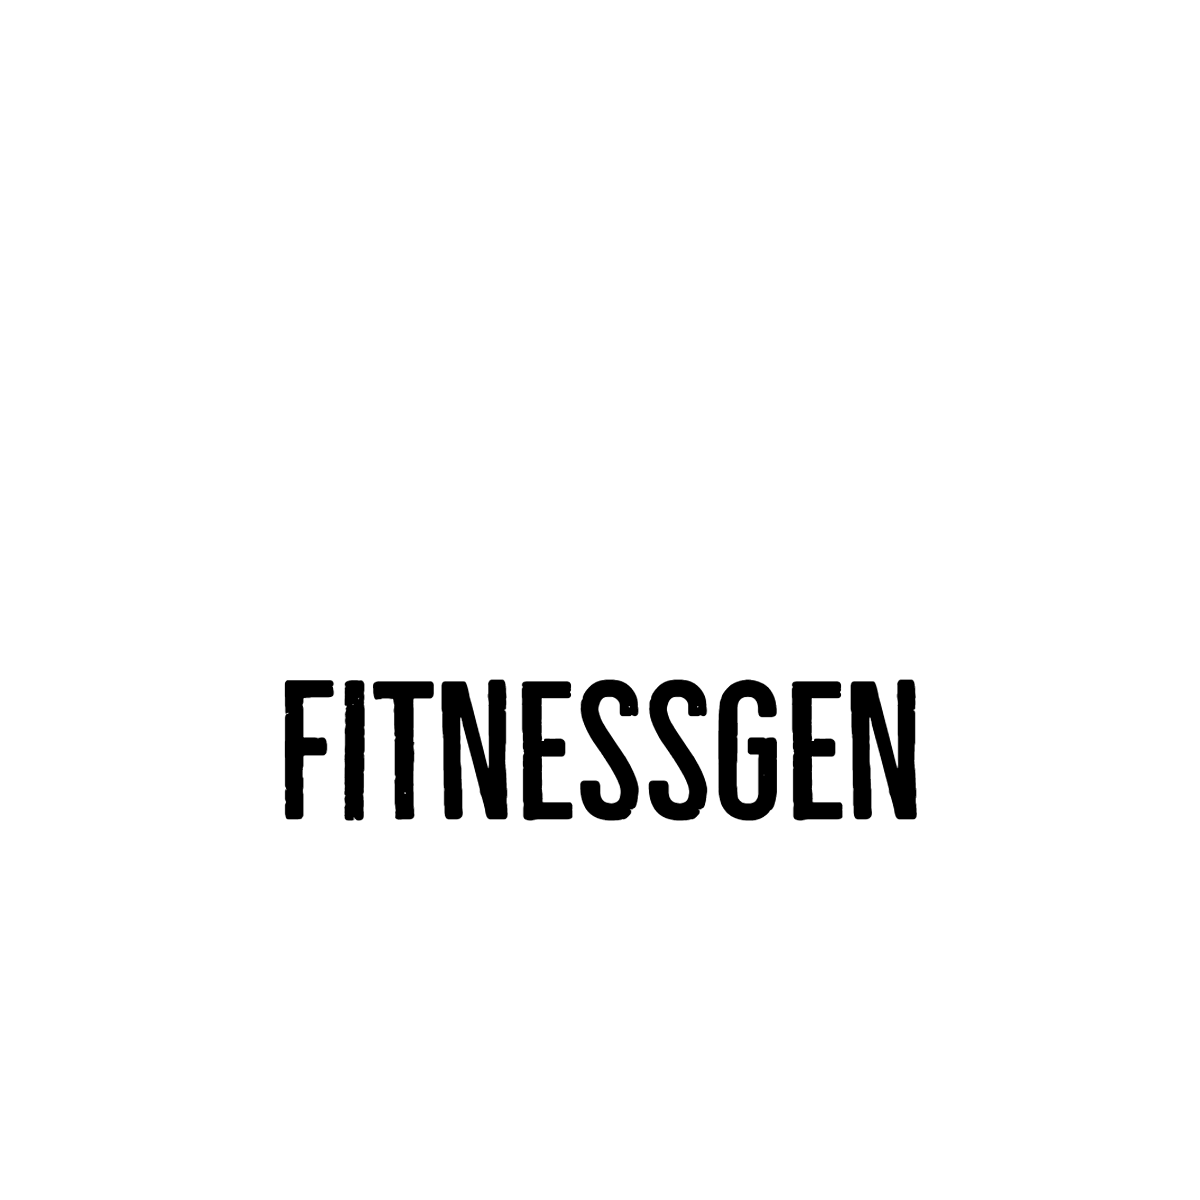 FitnessGen-logos_white.png